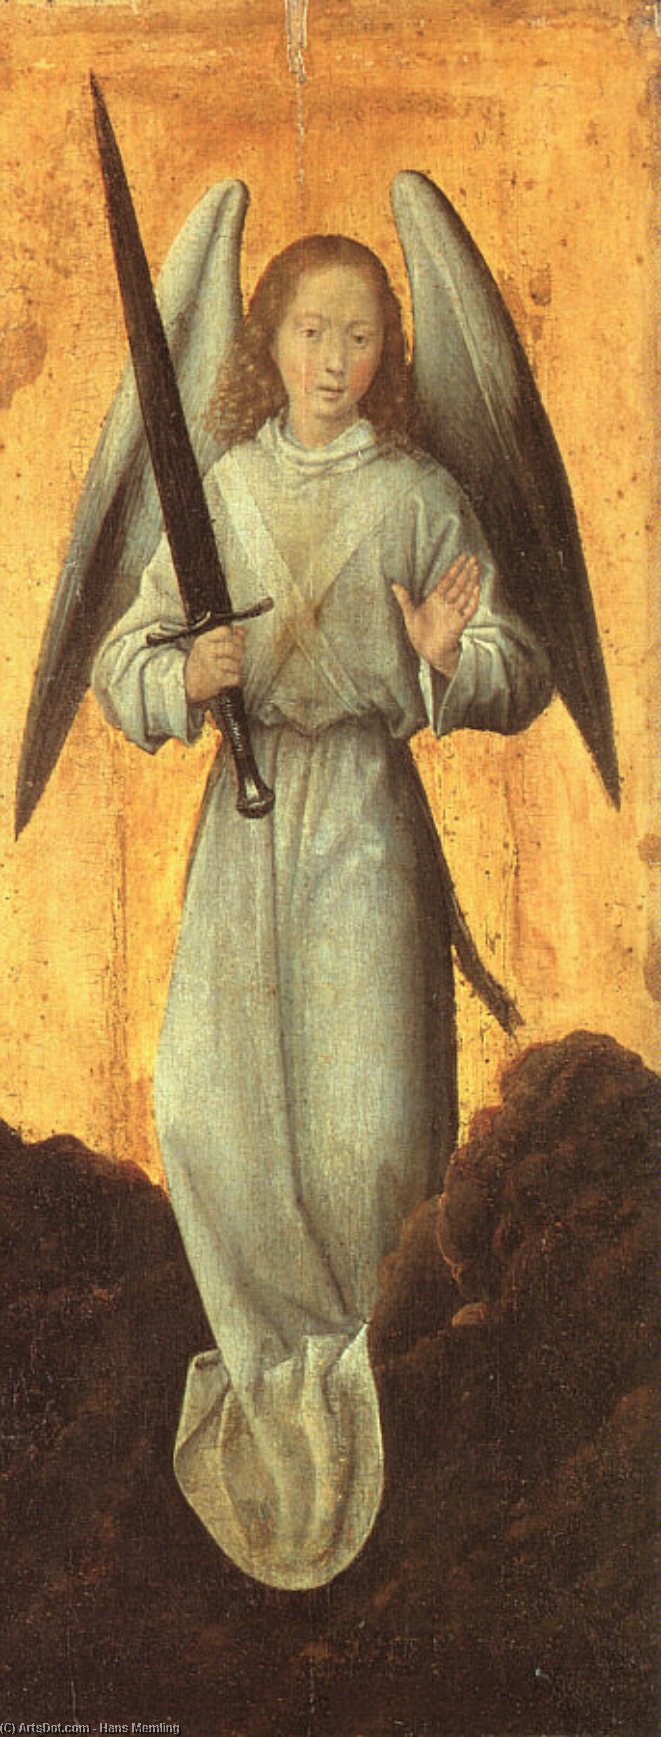 WikiOO.org - אנציקלופדיה לאמנויות יפות - ציור, יצירות אמנות Hans Memling - the archangel michael